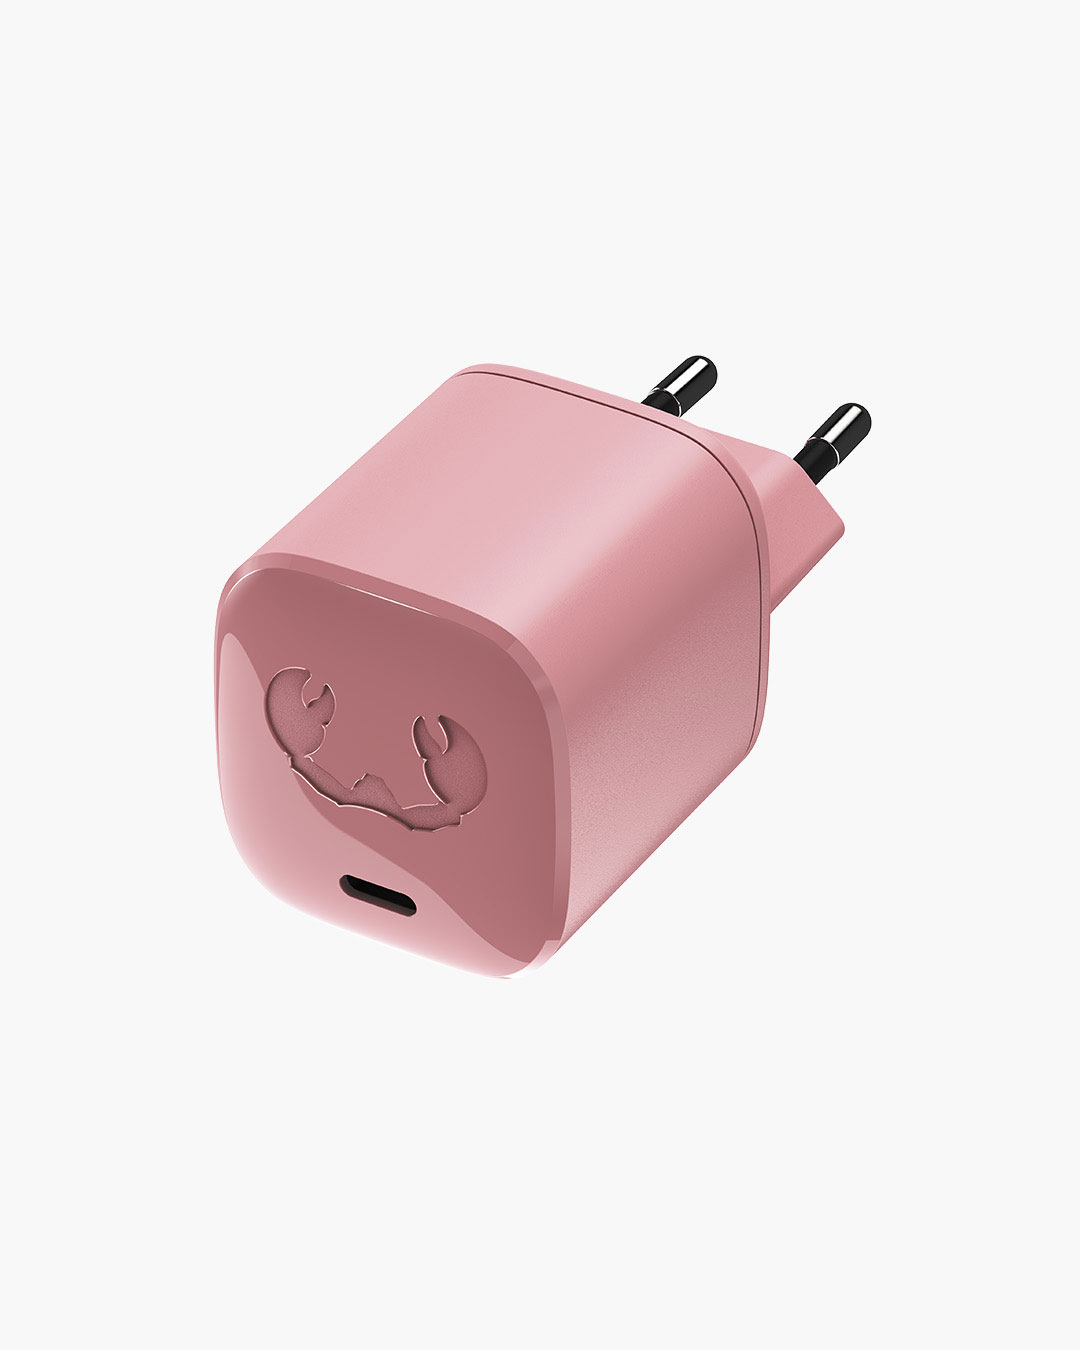 Fresh 'n Rebel - USB-C Mini Charger 30W - Dusty Pink